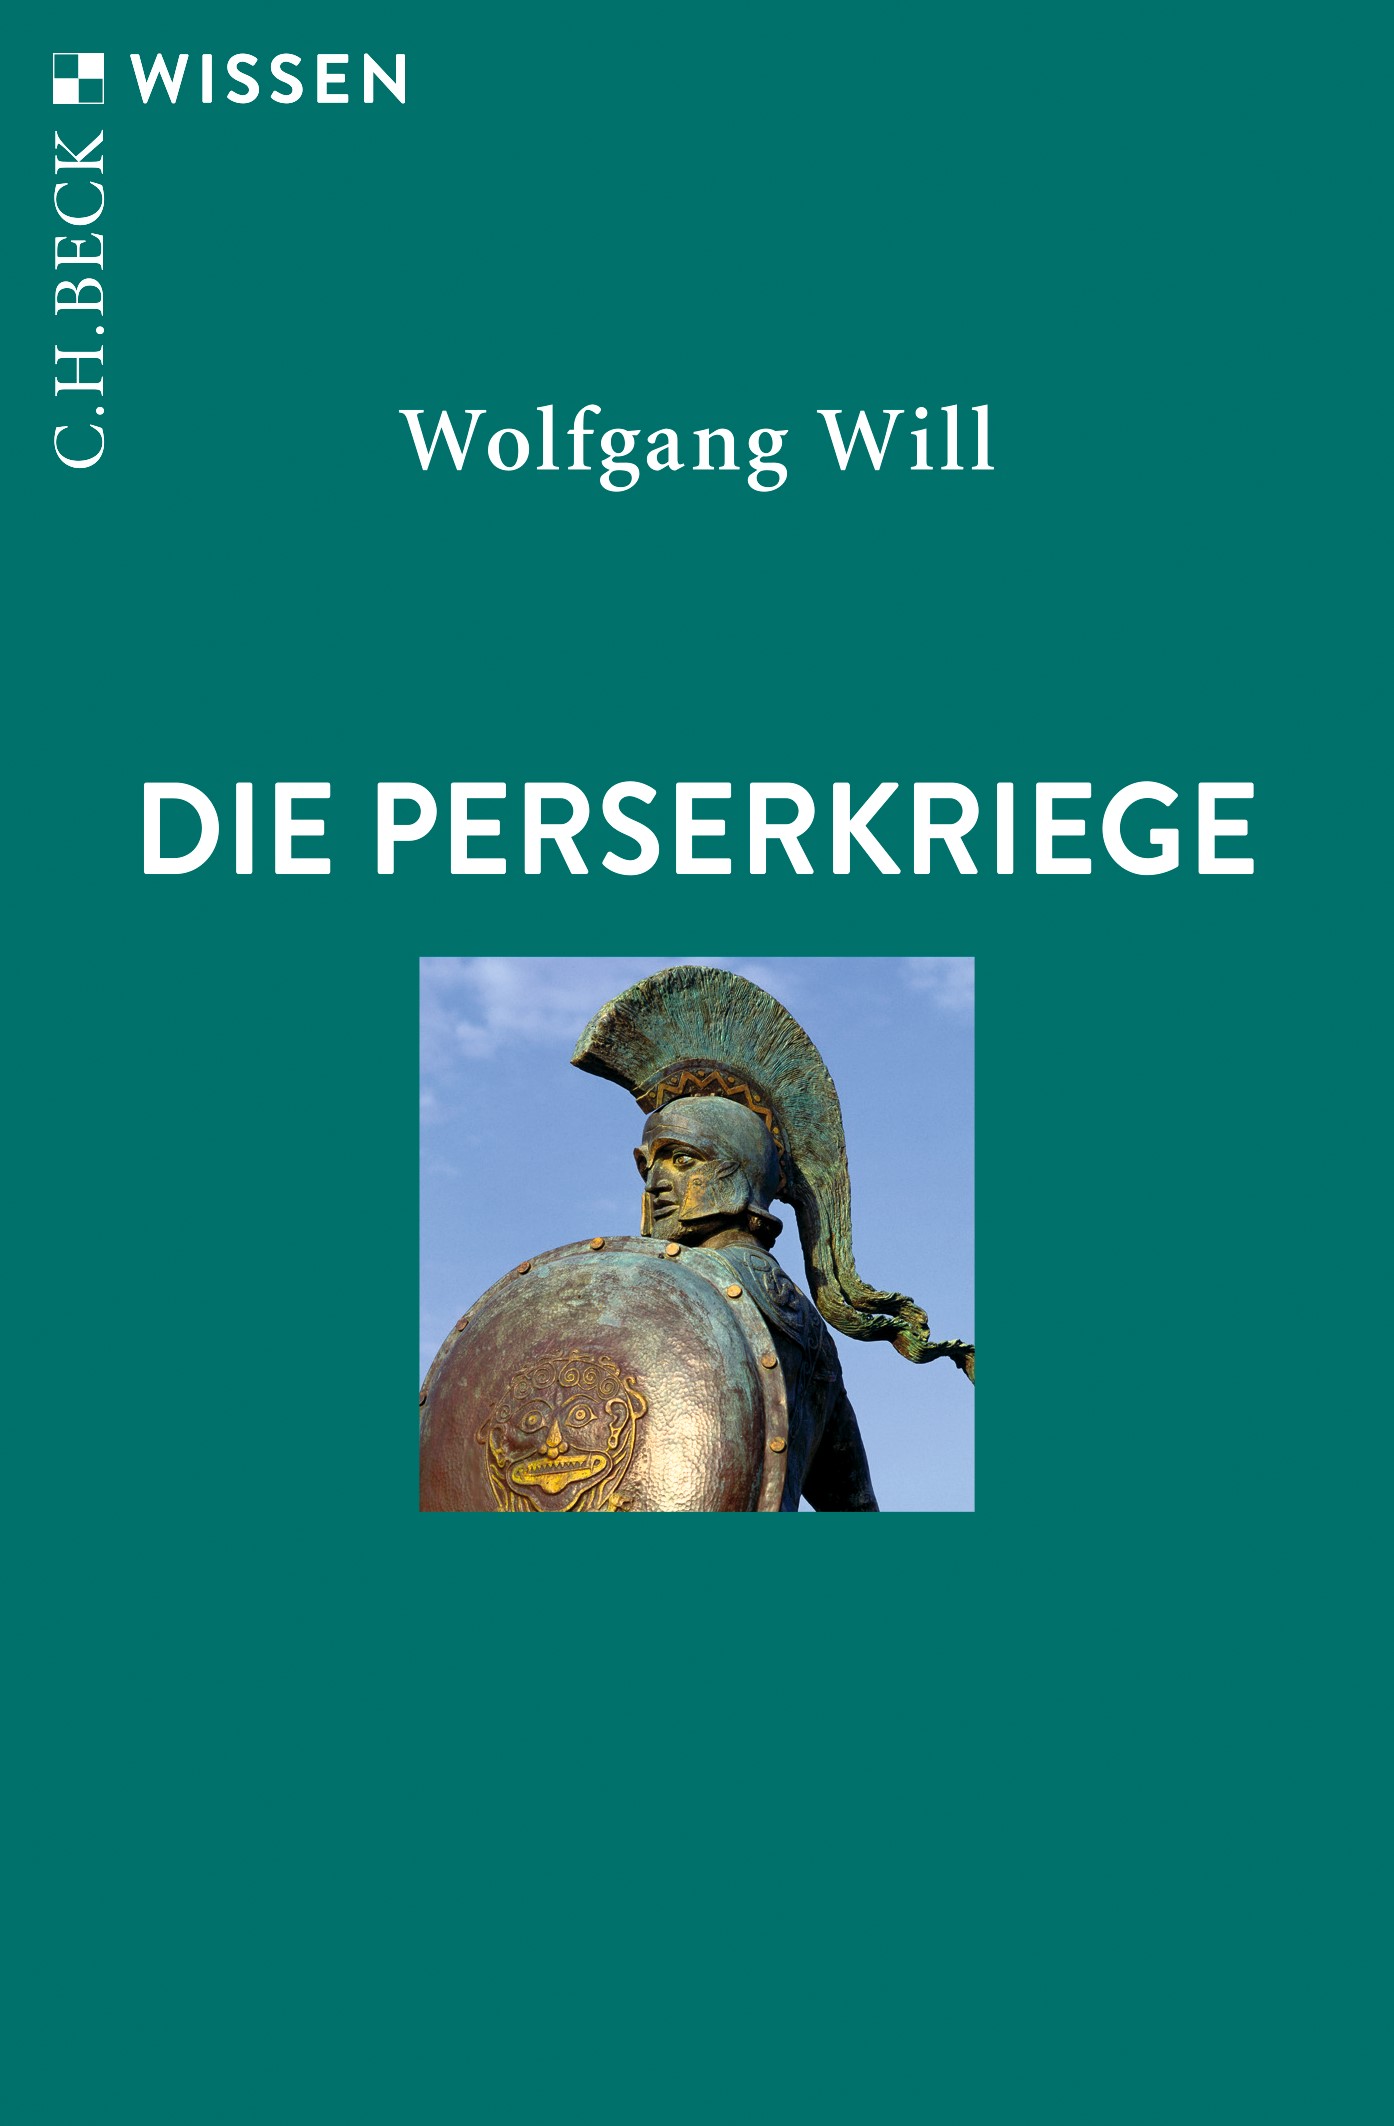 Cover: Will, Wolfgang, Die Perserkriege